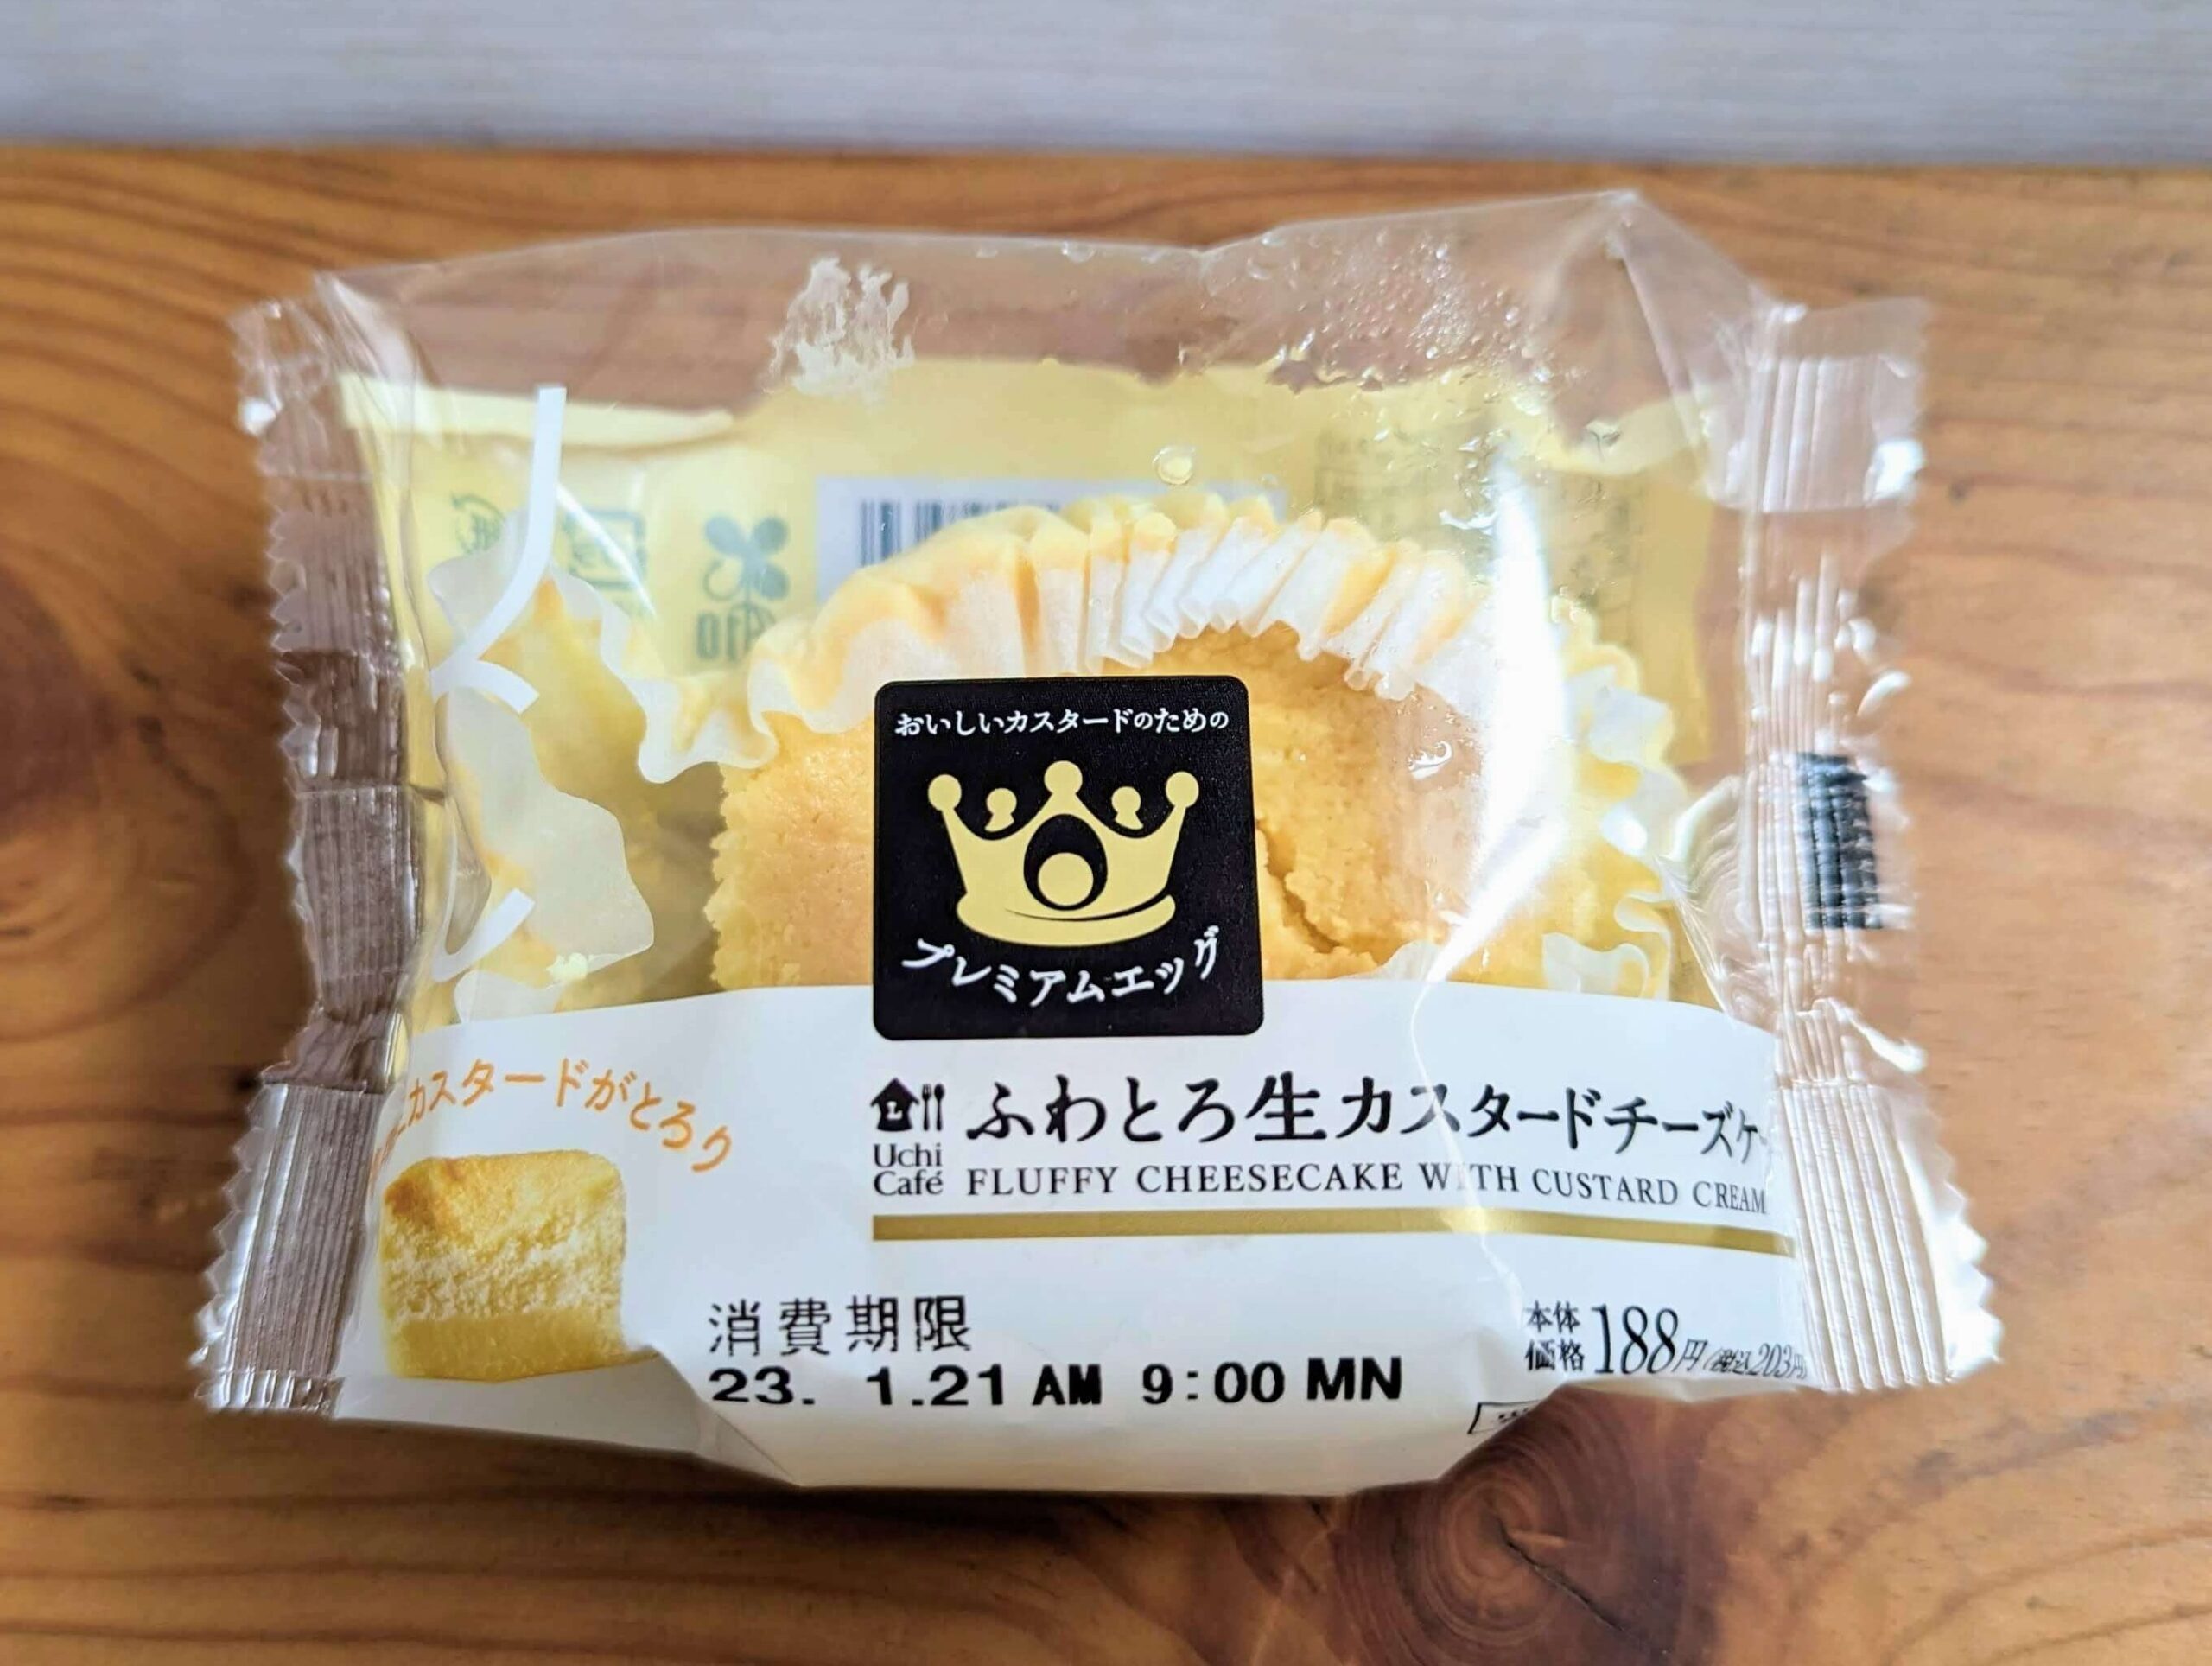 ローソン「ふわとろ生カスタードチーズケーキ」 (3)